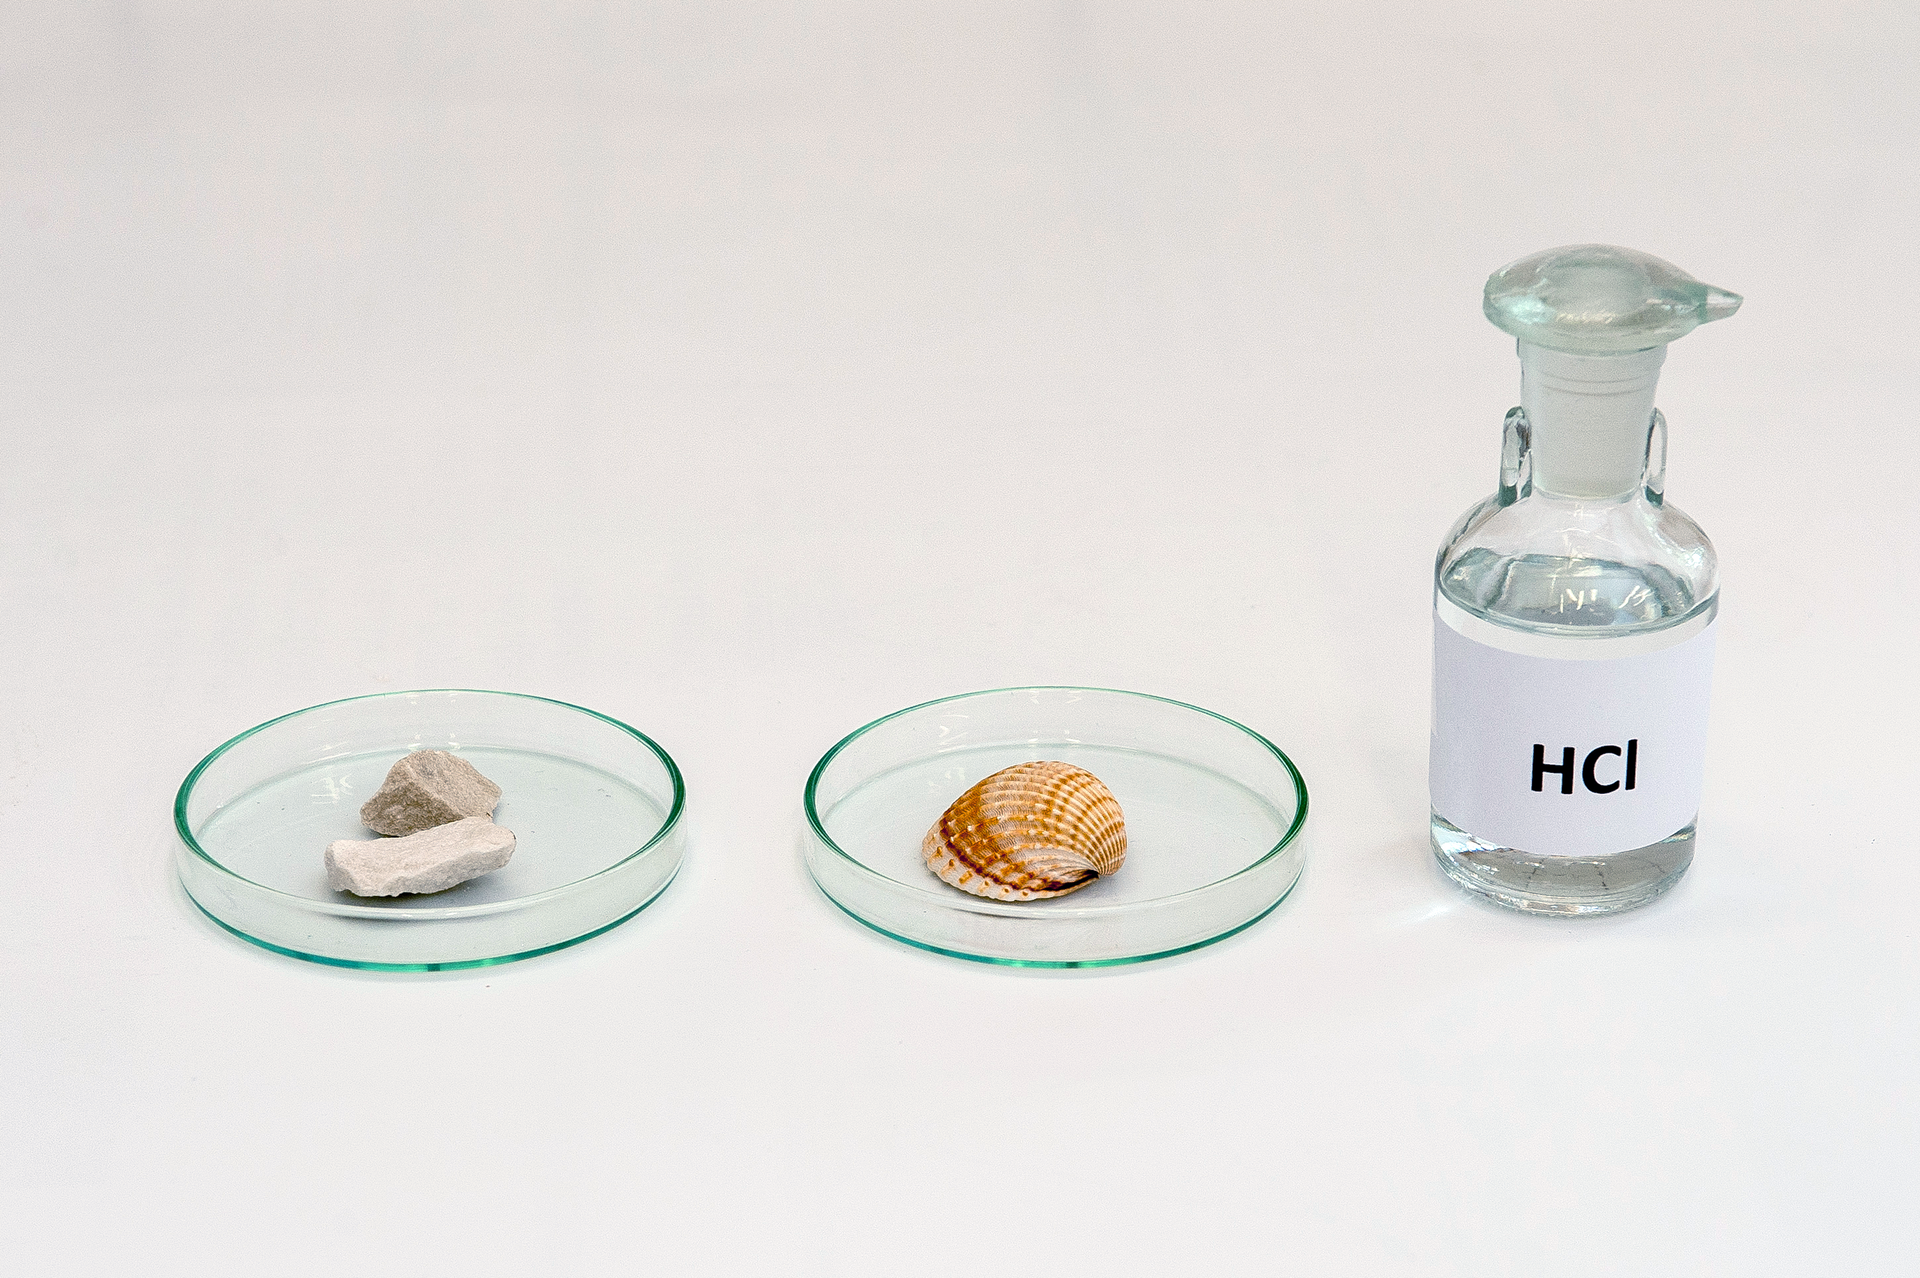 Pierwsze zdjęcie galerii przedstawia przygotowania do eksperymentu. Na jasnej powierzchni leżą obok siebie, licząc od lewej: szalka Petriego z dwoma kawałkami skały wapiennej, szalka Petriego z muszlą oraz szklana zakorkowana butelka z napisem HCl na etykiecie.